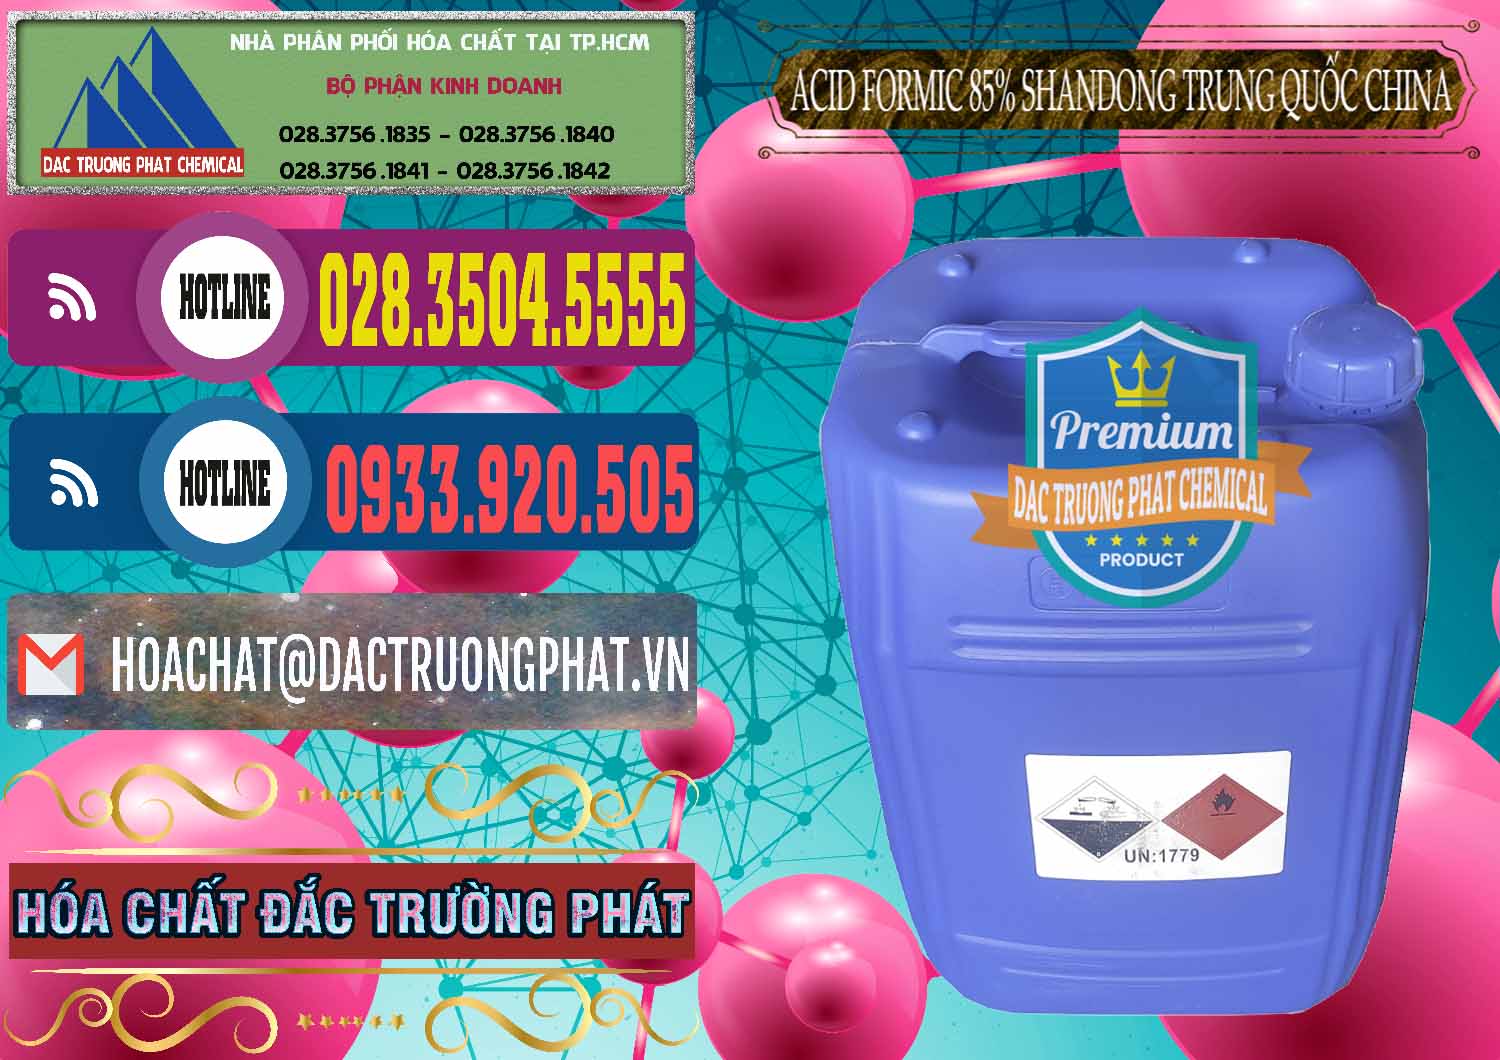 Nhà cung ứng ( bán ) Acid Formic - Axit Formic 85% Shandong Trung Quốc China - 0235 - Đơn vị chuyên cung cấp & bán hóa chất tại TP.HCM - muabanhoachat.com.vn